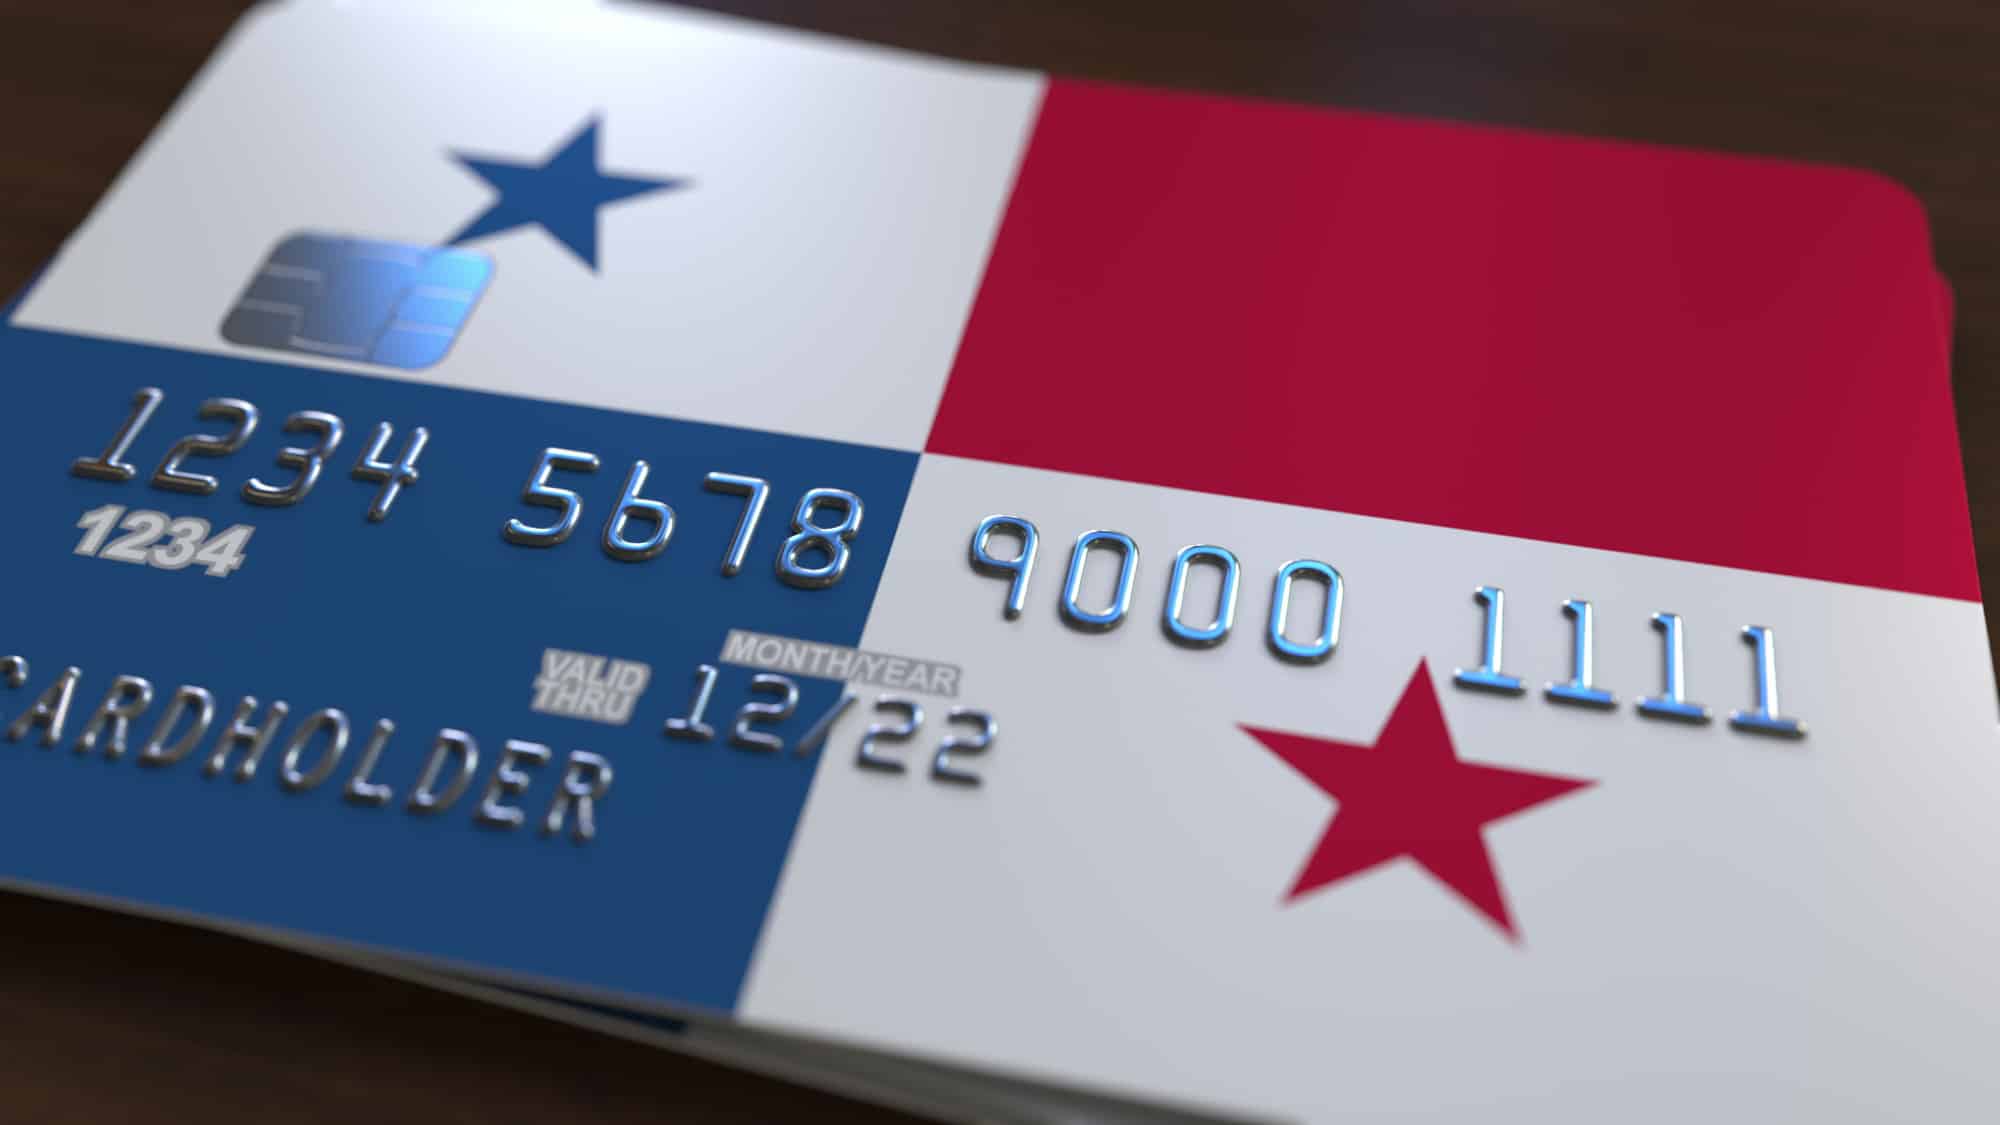 Bude moje kreditní karta fungovat v Panamě?